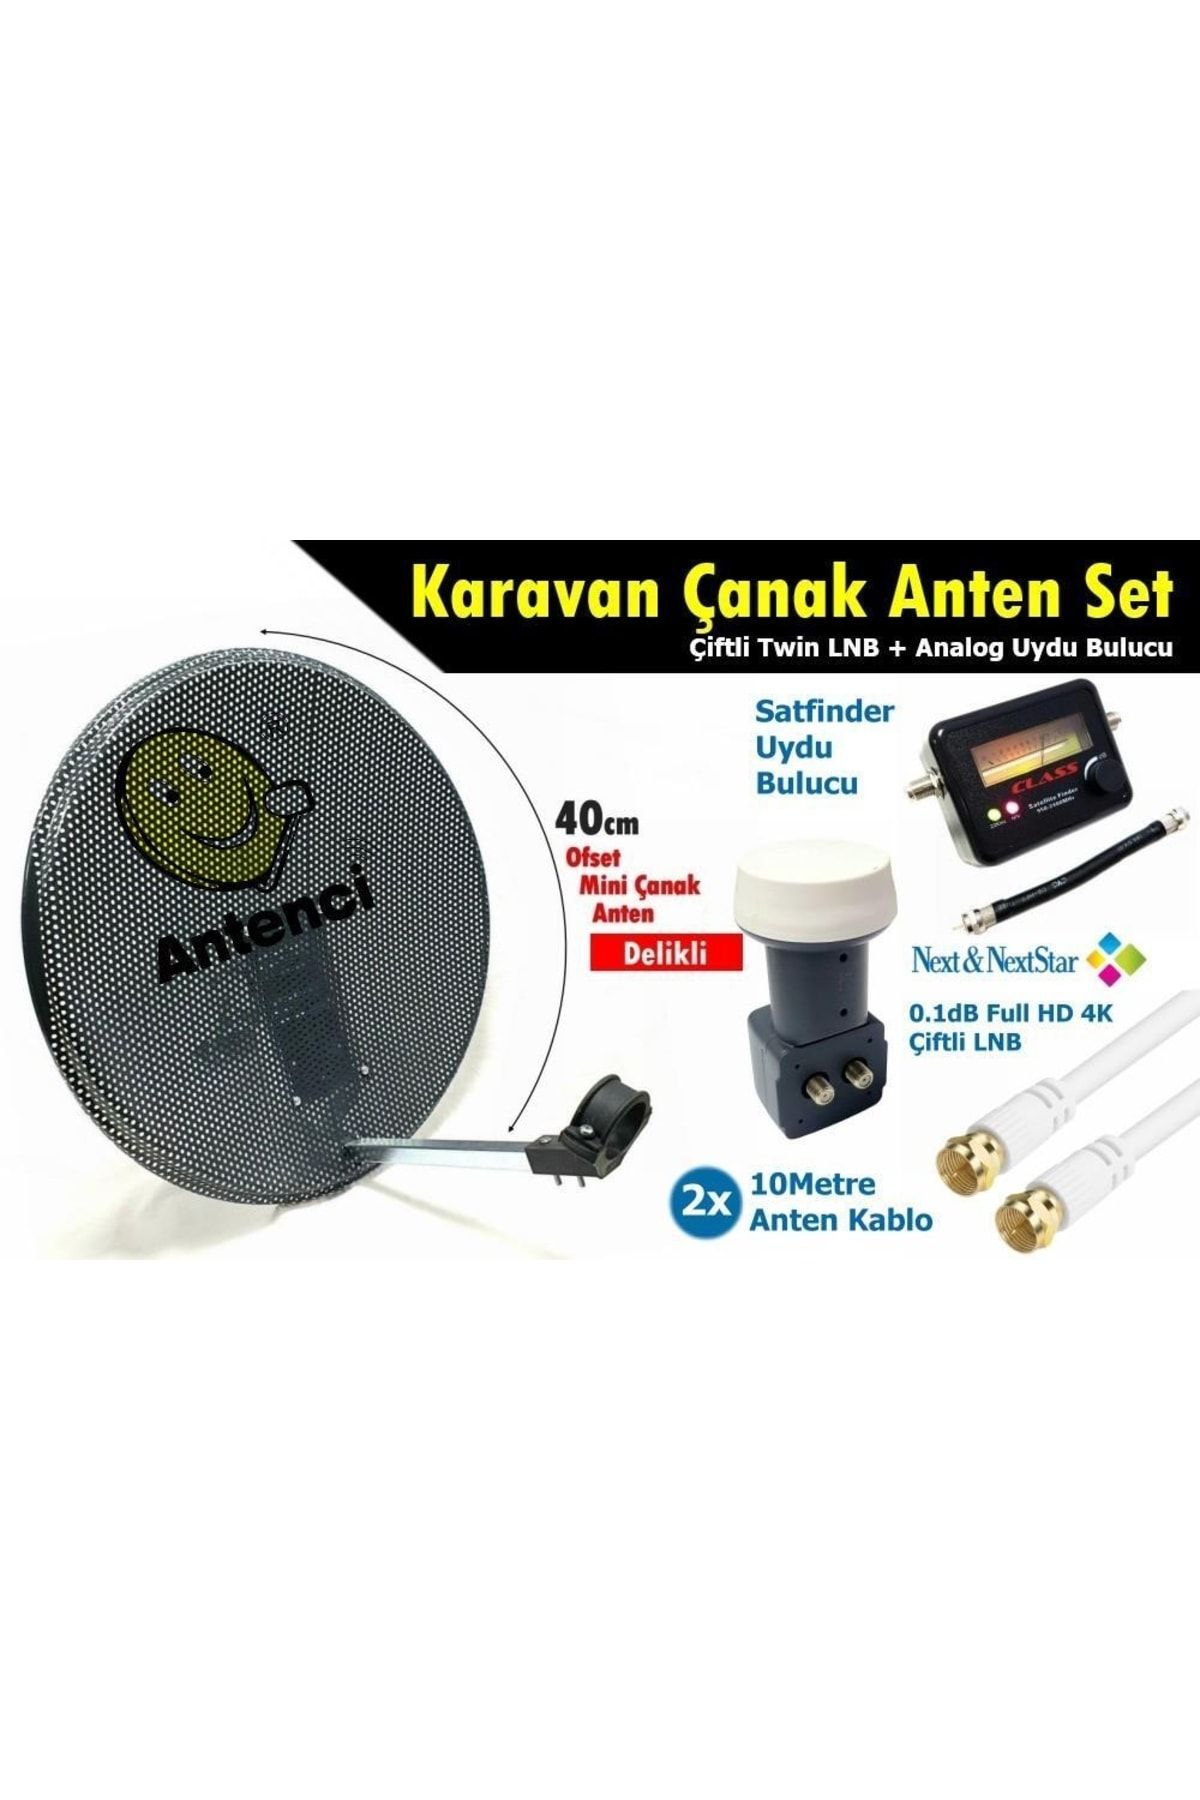 Antenci 40cm Delikli Karavan Çanak Anten Seti Çiftli Lnb +analog Uydu Bulucu